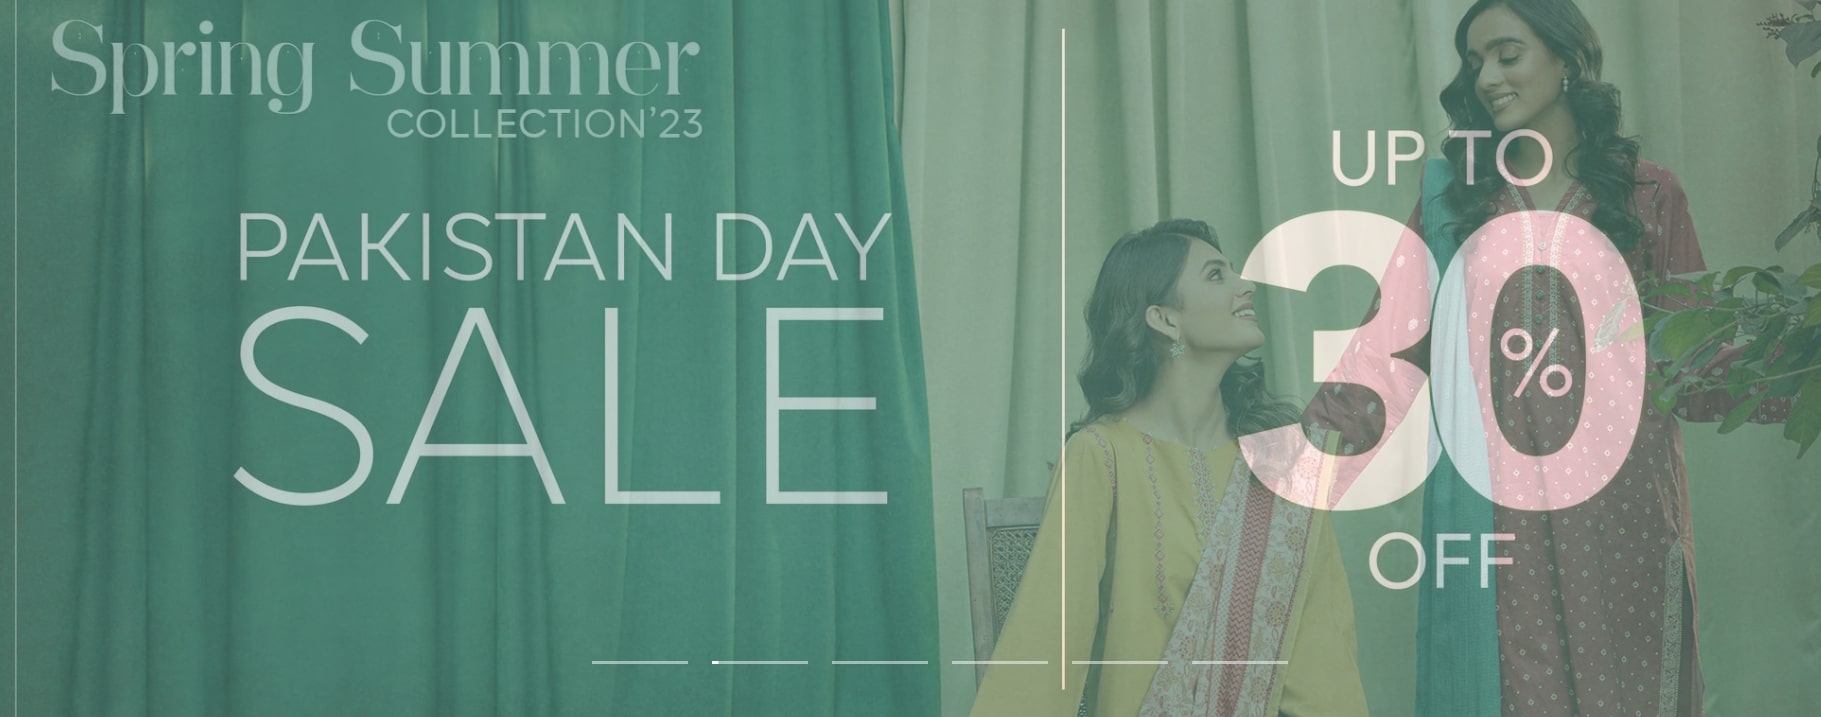 Zeen Pakistan Day Sale